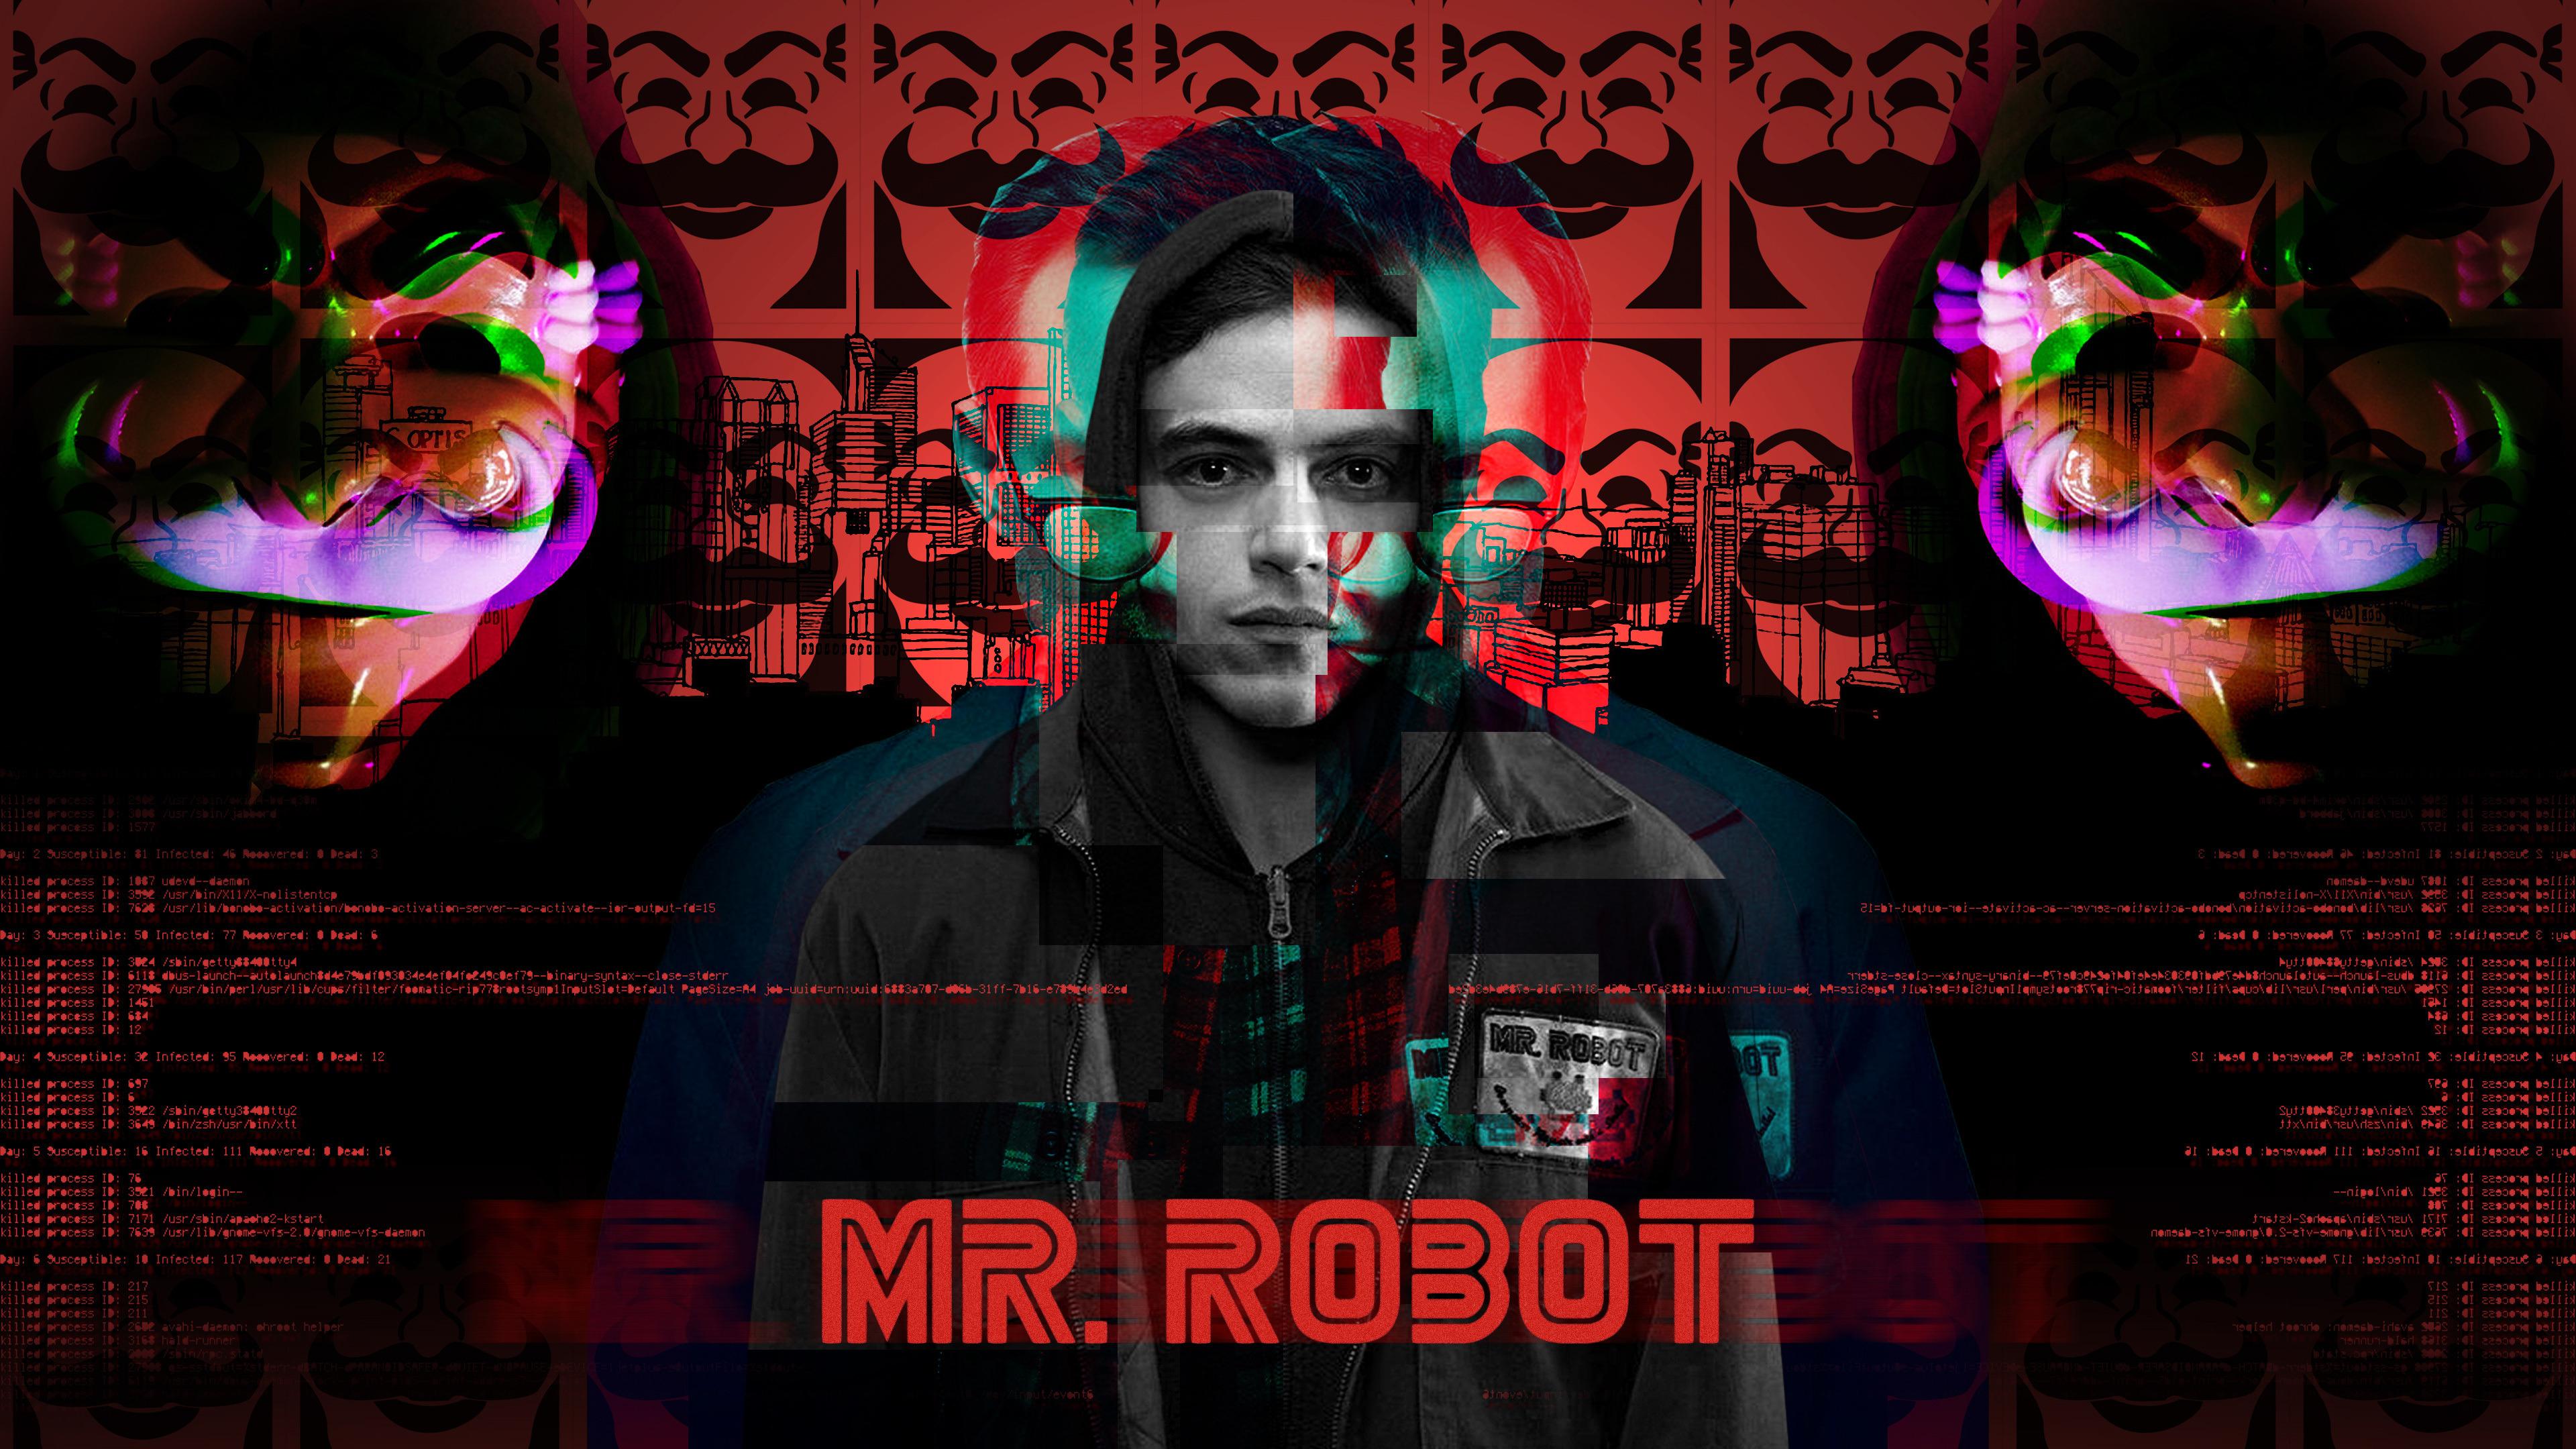 TV Show Mr. Robot 4k Ultra HD Wallpaper